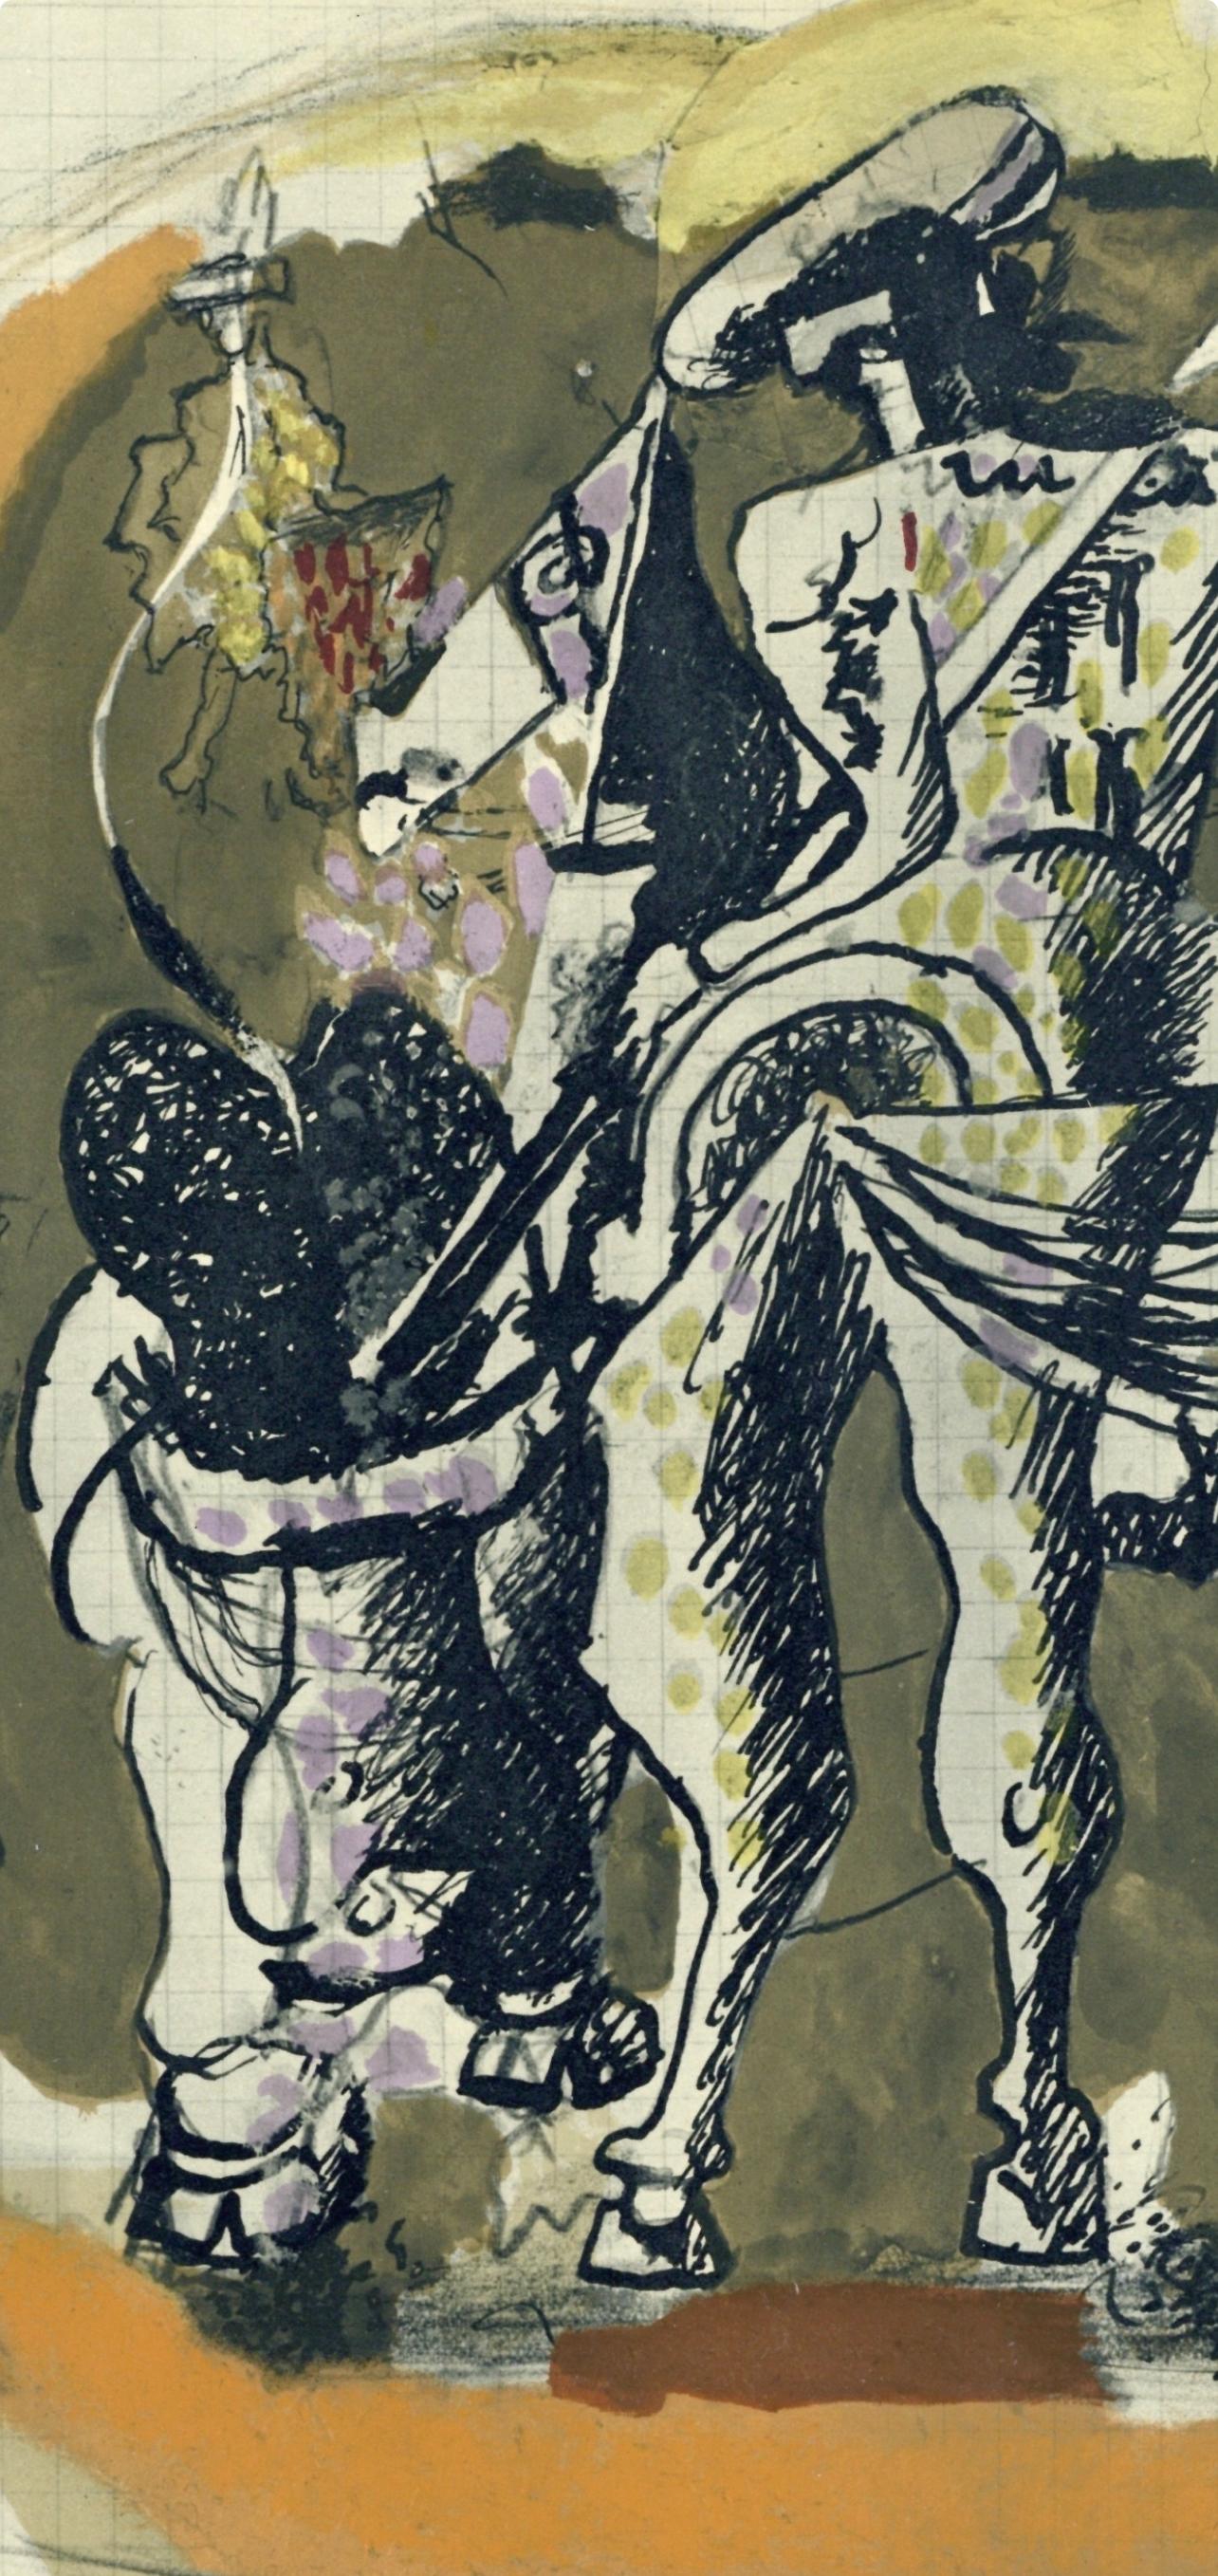 Braque, Composition, Verve: Revue Artistique et Littéraire (after) - Modern Print by Georges Braque